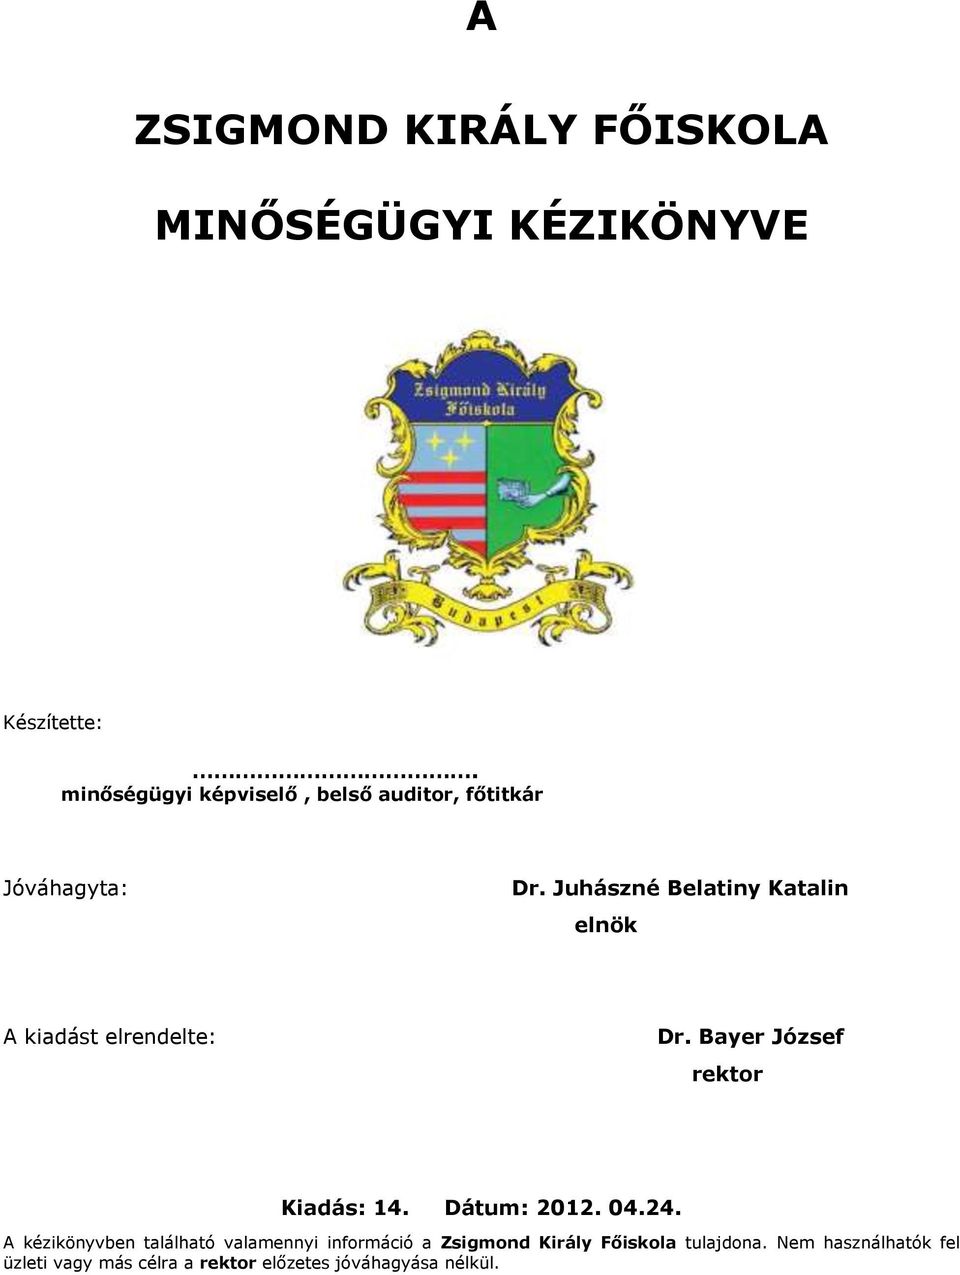 Juhászné Belatiny Katalin elnök A kiadást elrendelte: Dr. Bayer József rektor Dátum: 2012.